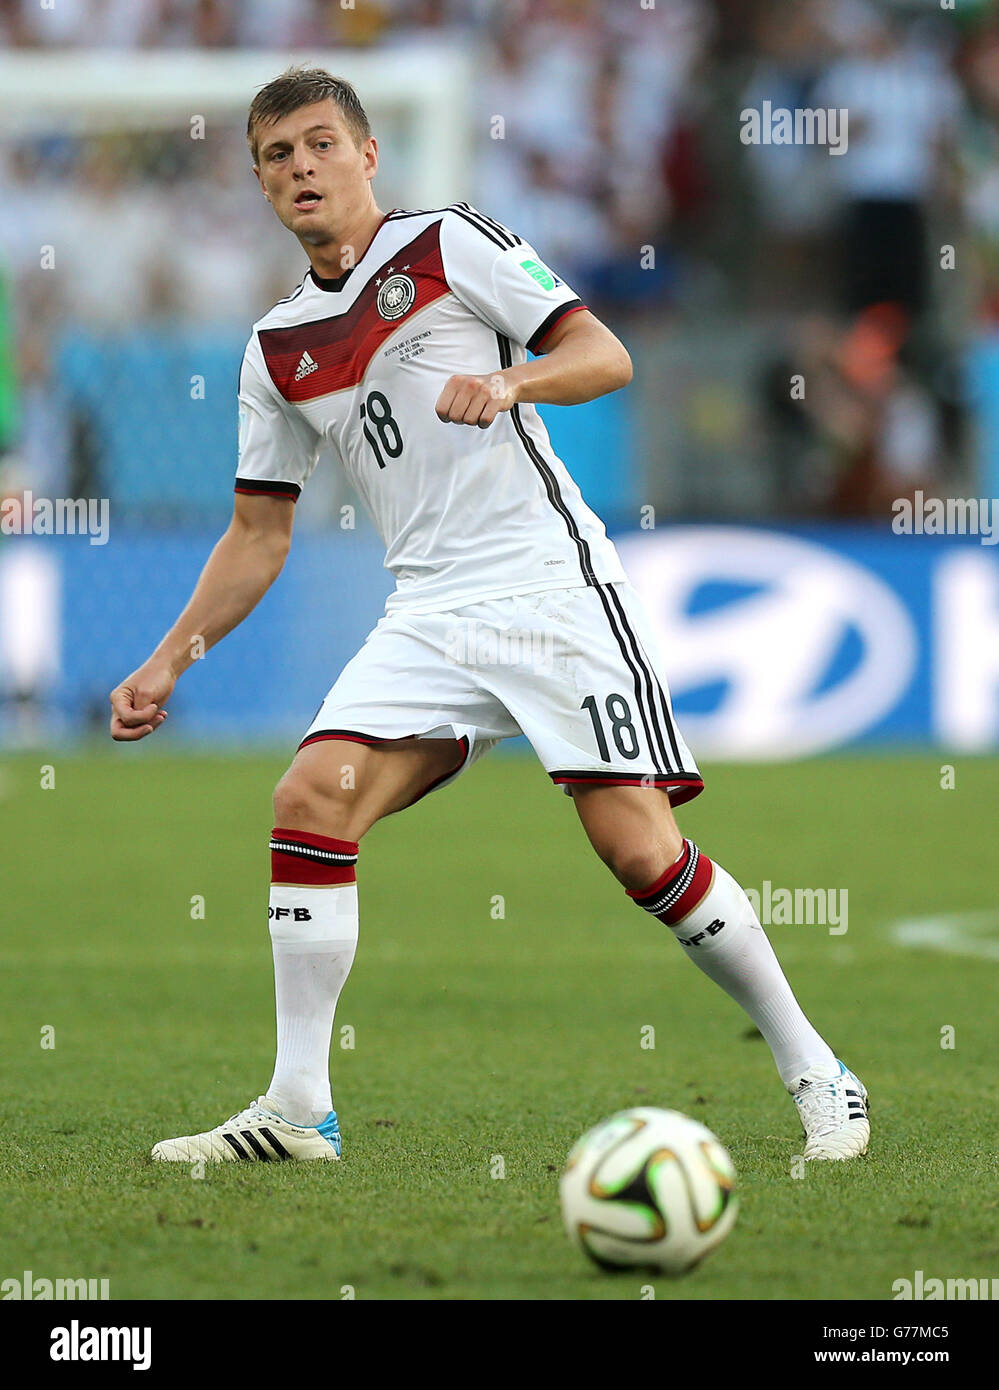 Soccer - FIFA World Cup 2014 - Final - Germany v Argentina - Estadio do Maracana. Toni Kroos, Germany Stock Photo